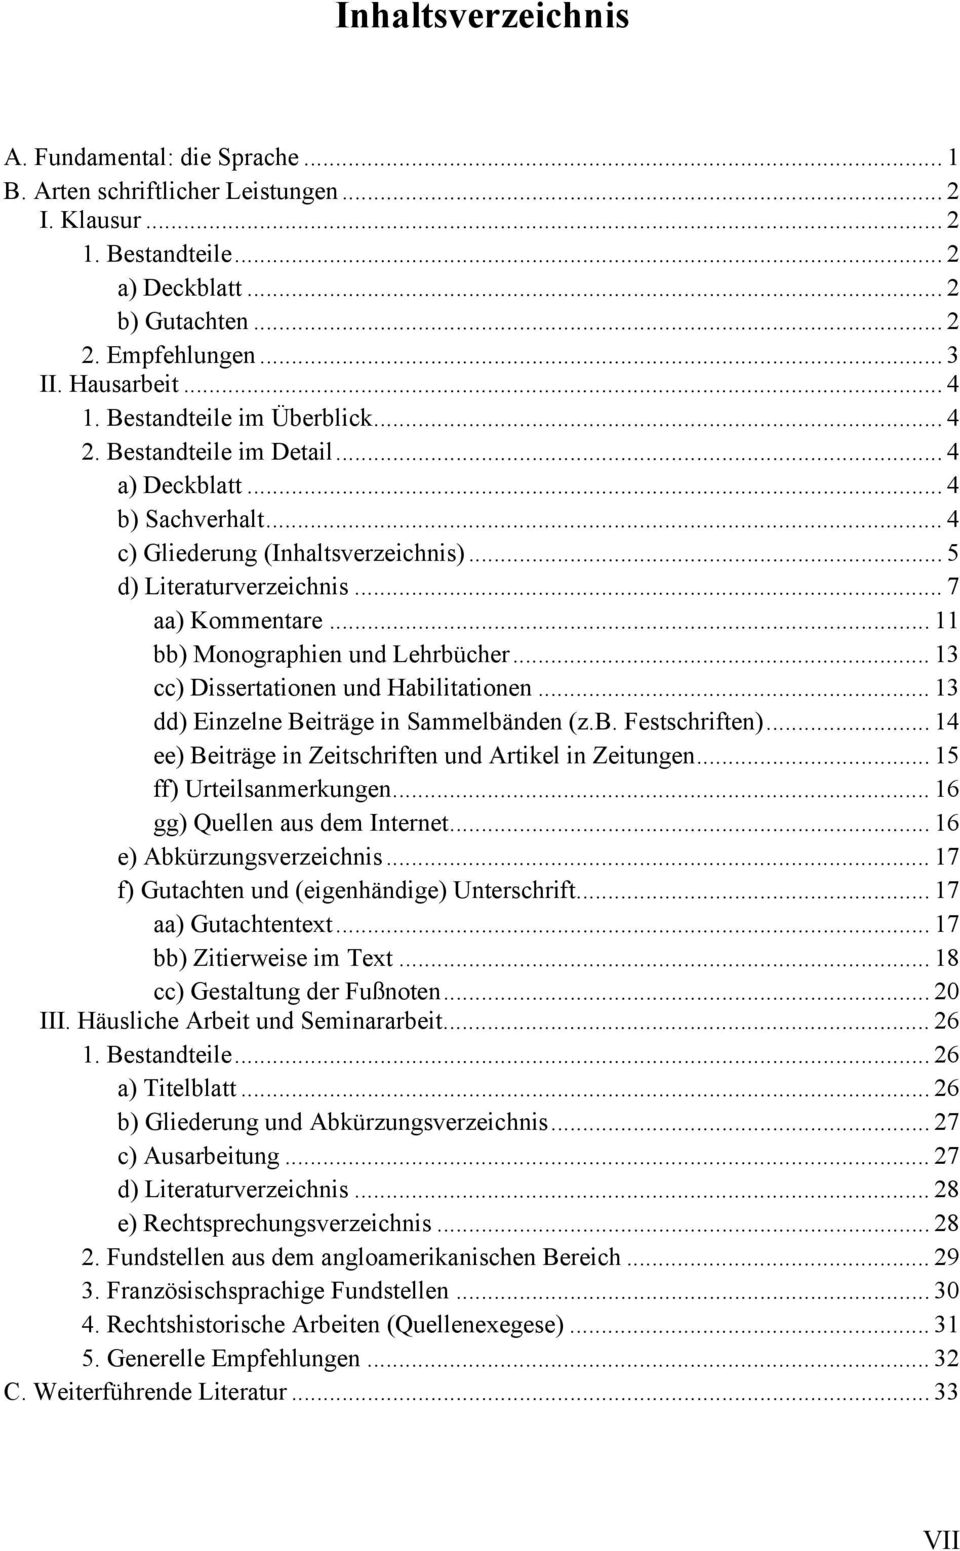 .. 11 bb) Monographien und Lehrbücher... 13 cc) Dissertationen und Habilitationen... 13 dd) Einzelne Beiträge in Sammelbänden (z.b. Festschriften).